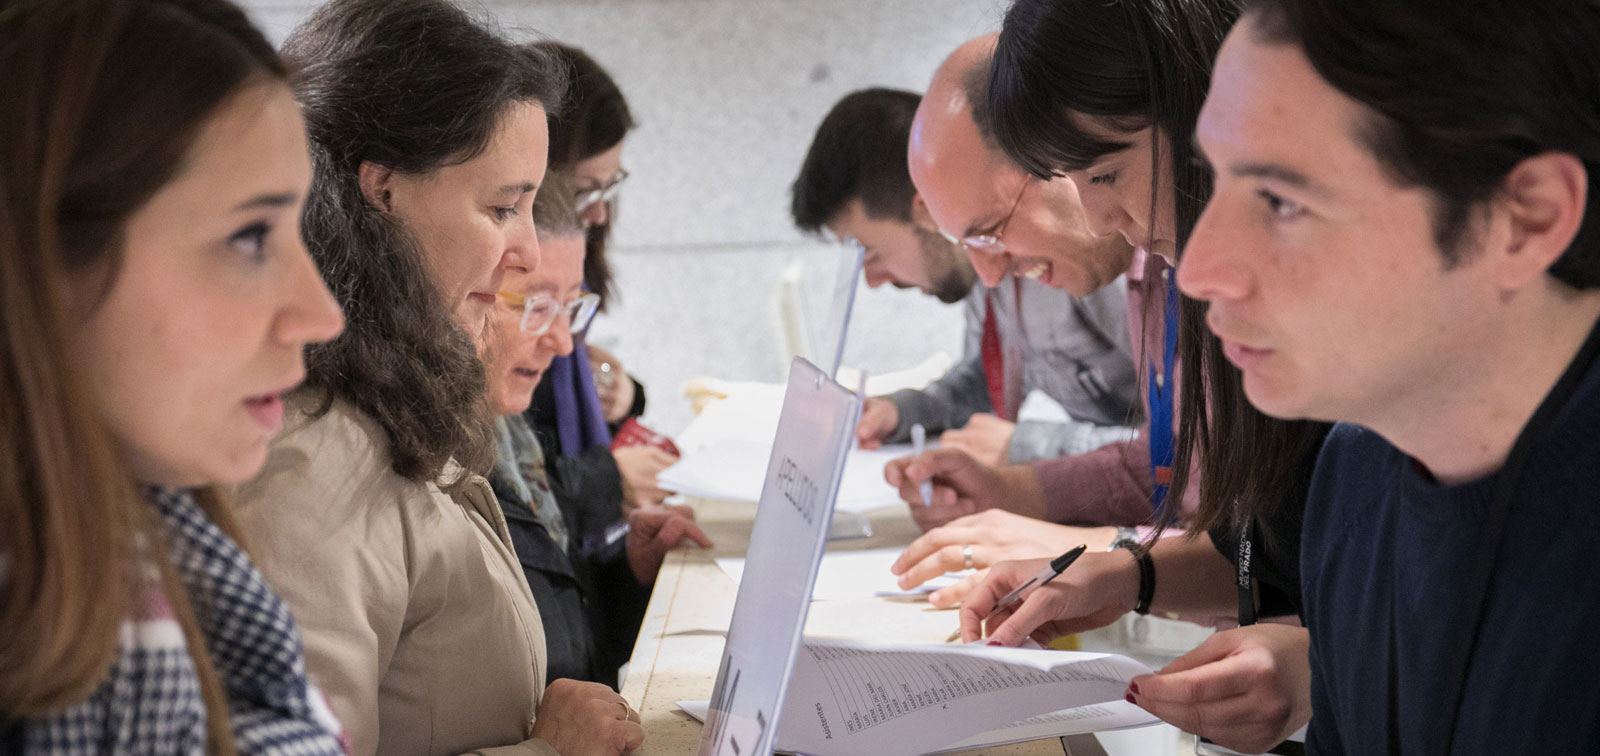 I Encuentro ICOM-CECA España. El futuro de los museos. Recuperar y reimaginar tejiendo redes / IV Seminario Internacional Educación y Museos